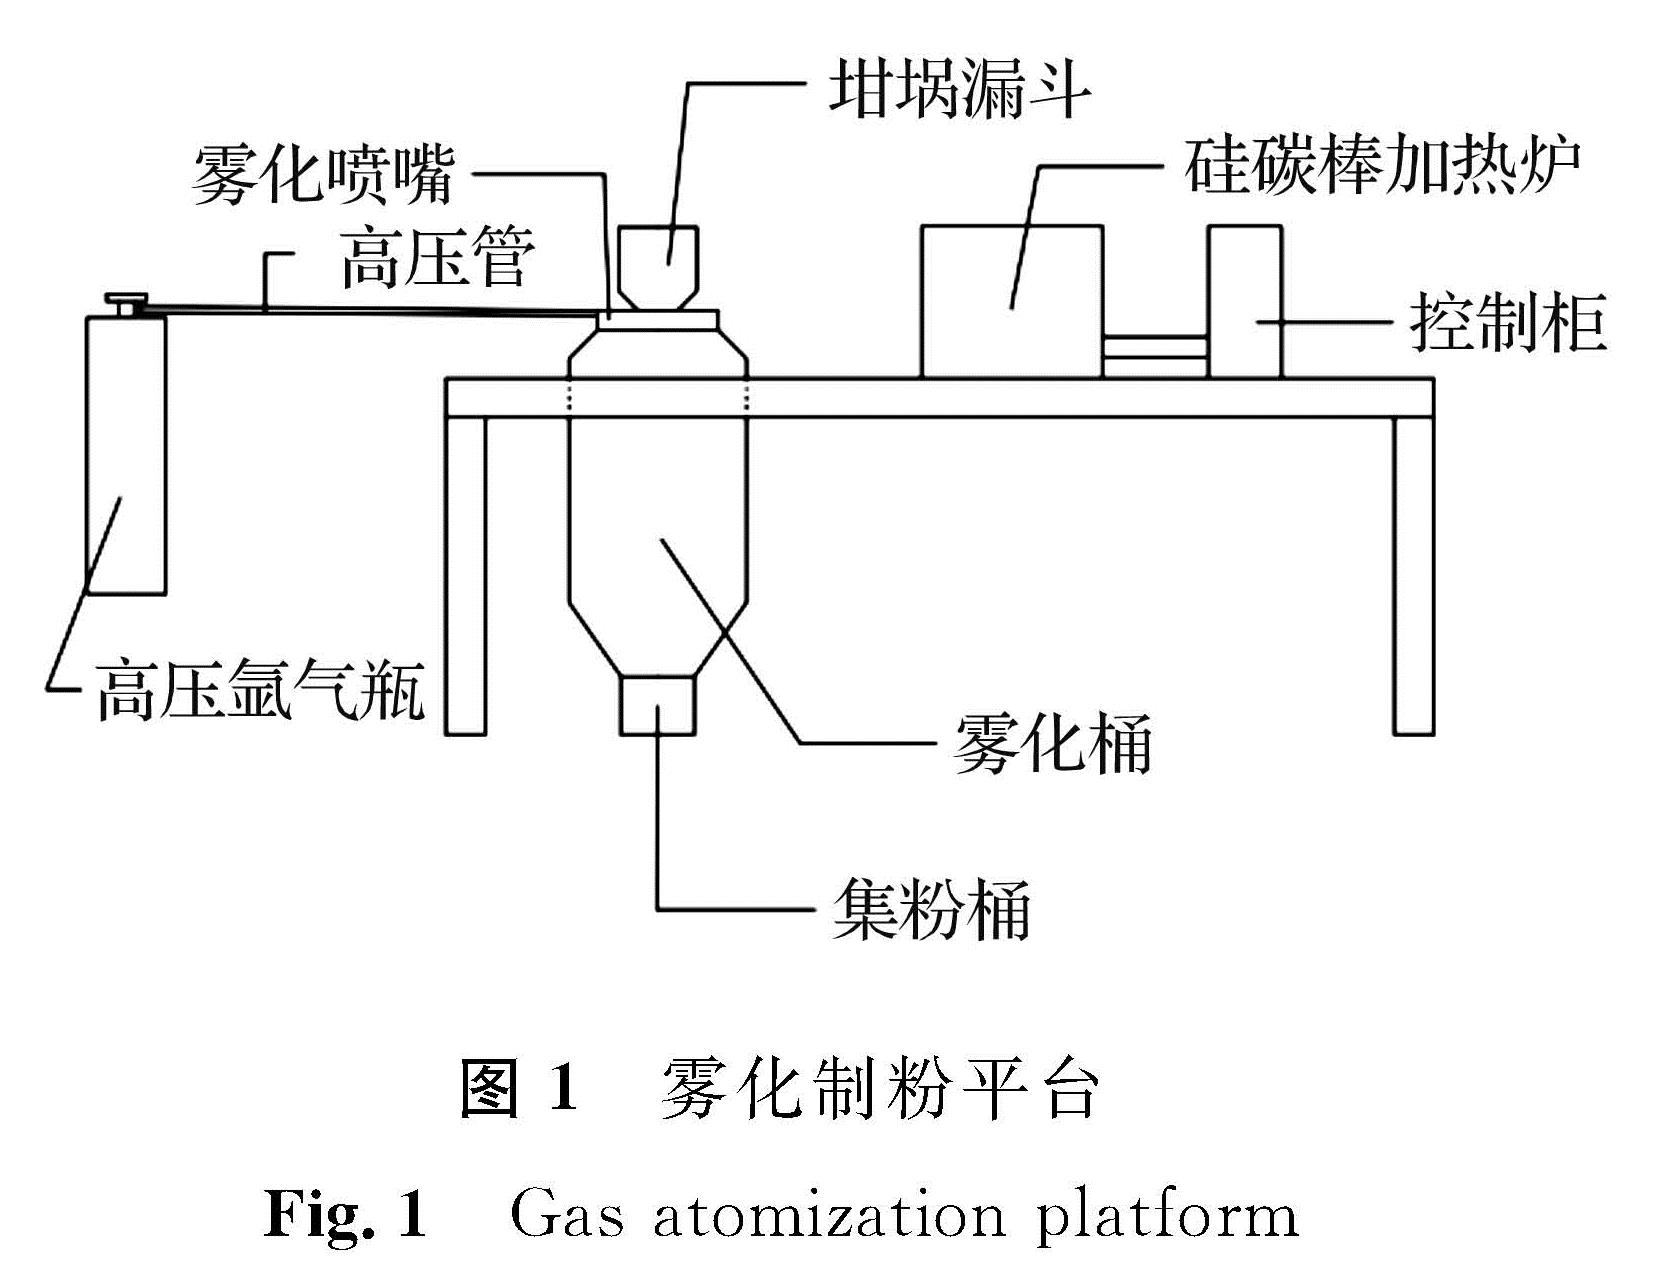 图1 雾化制粉平台<br/>Fig.1 Gas atomization platform